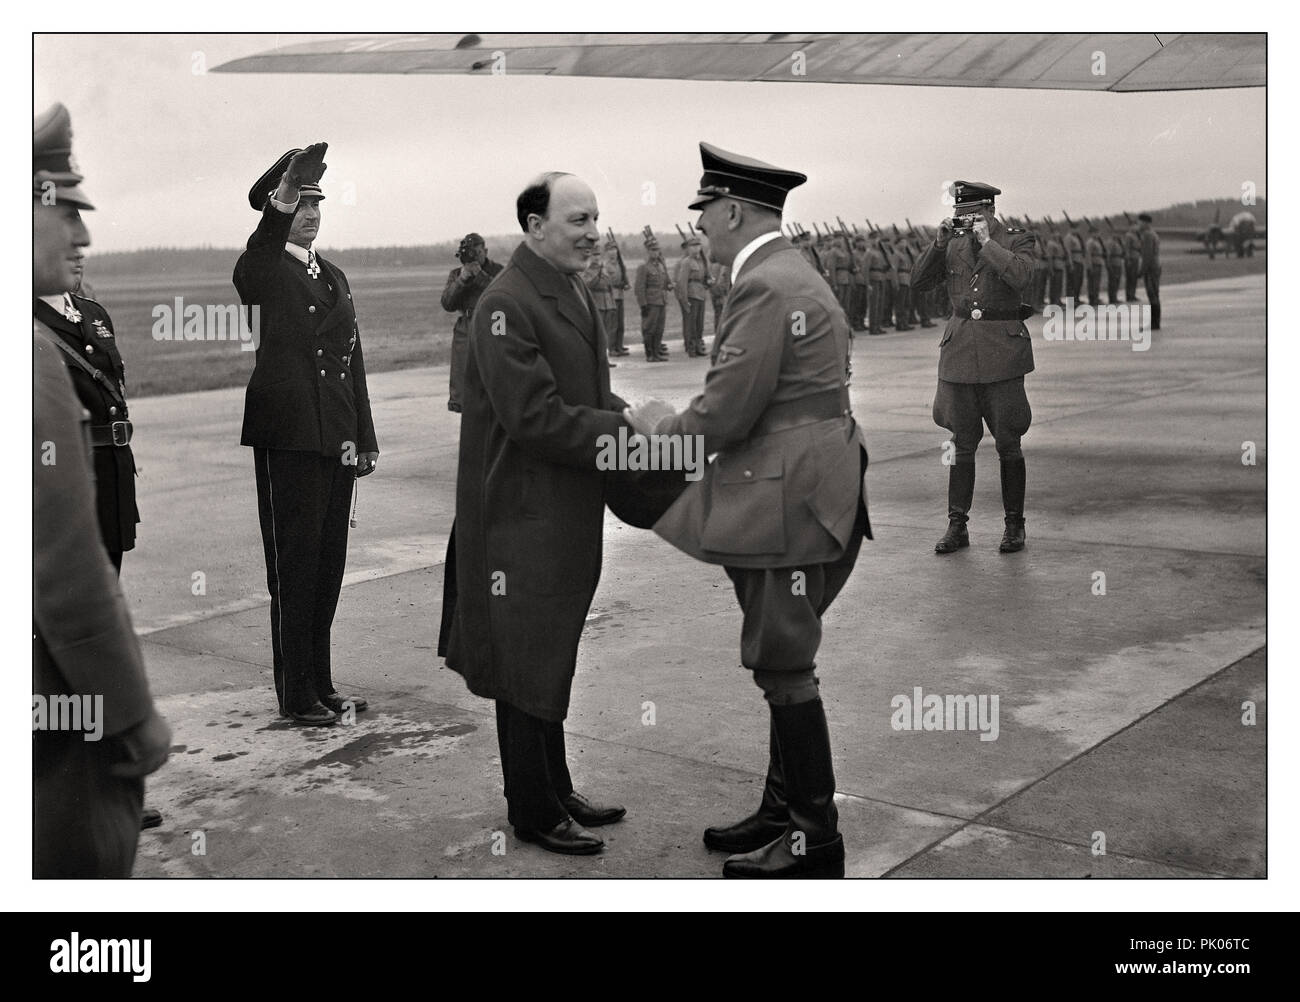 WW2 Adolph Hitler rencontre le président Ryti à l'aéroport d'Immola lors d'une visite à Field Marshall Mannerheim juin 1942 le photographe de presse de l'Armée Nazi Wehrmacht, derrière qui utilise un appareil photo Leica IIIa de 35 mm allemand pour enregistrer l'événement. Banque D'Images